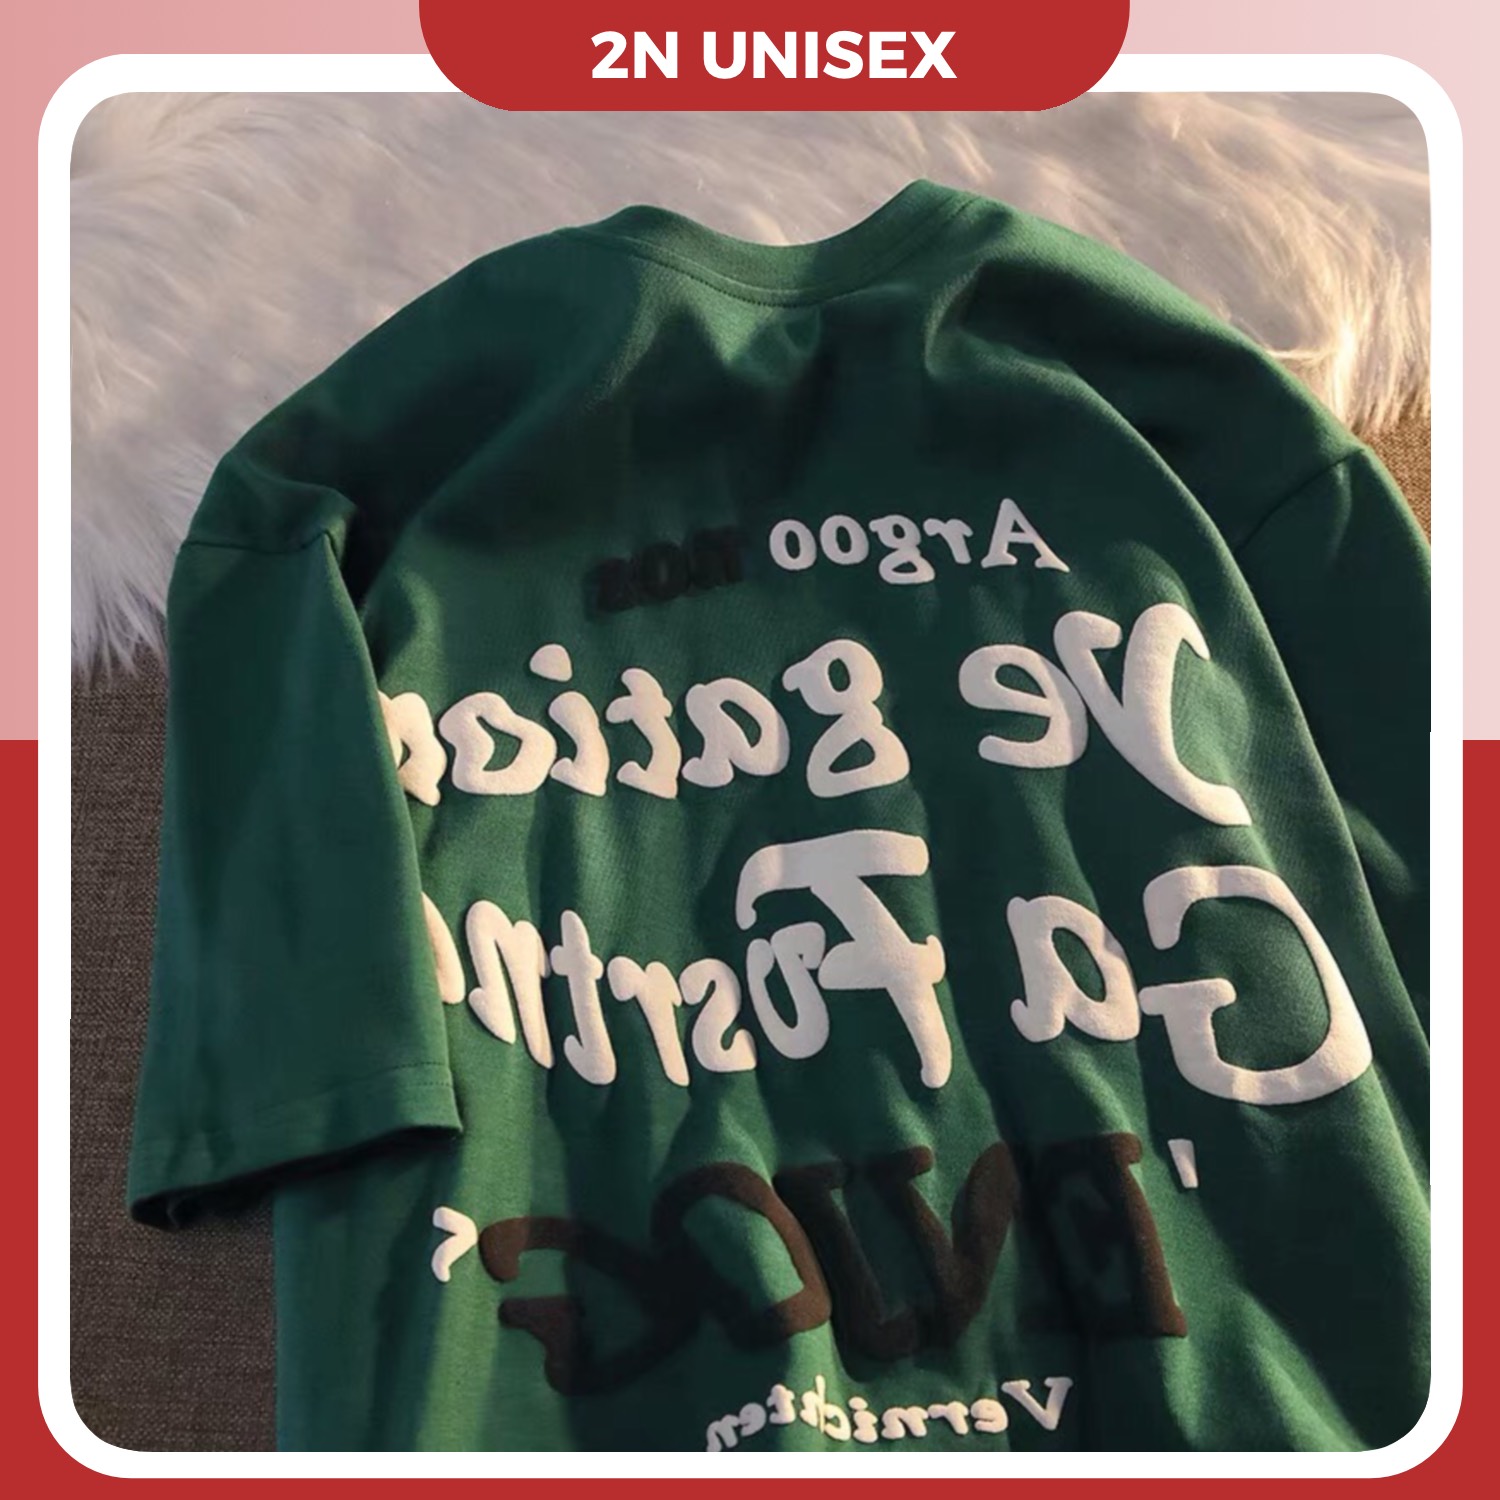 Áo thun tay lỡ form rộng - phông nam nữ cotton oversize - T shirt Argoo a - 2N Unisex